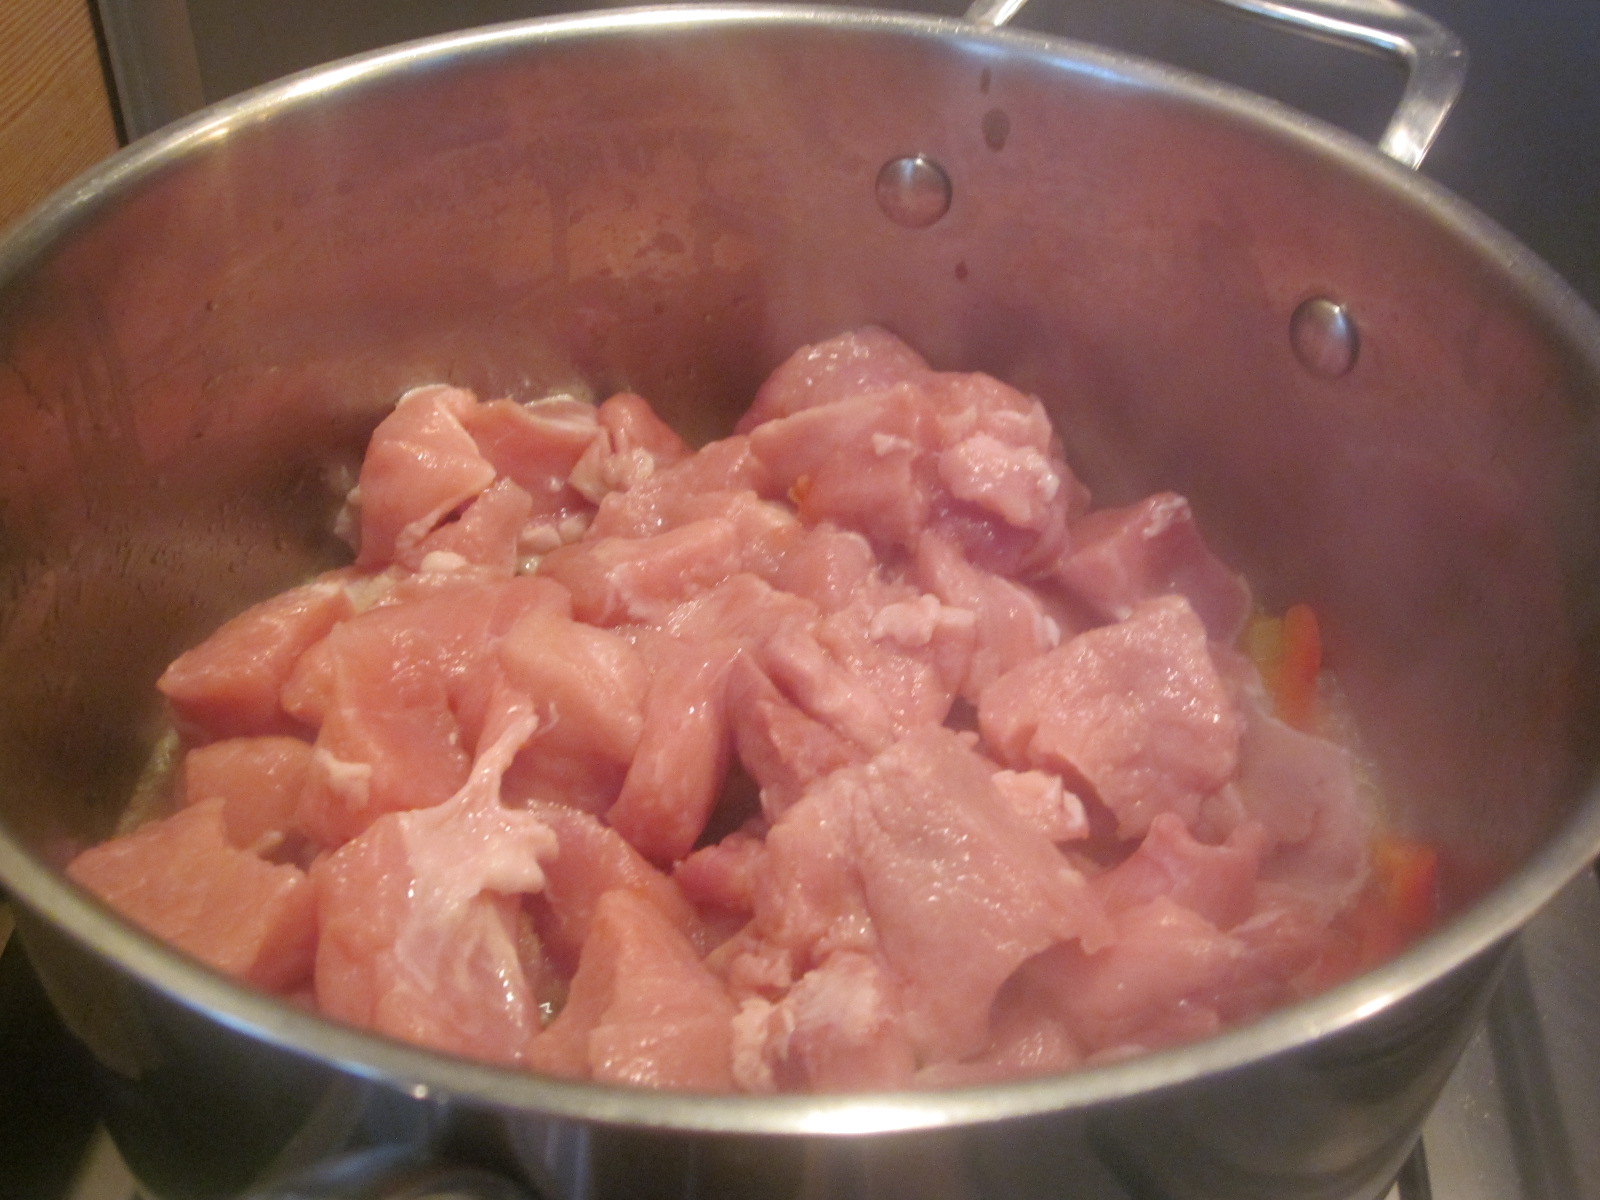 Bucățele  de porc cu ardei kapia și sos de smântână